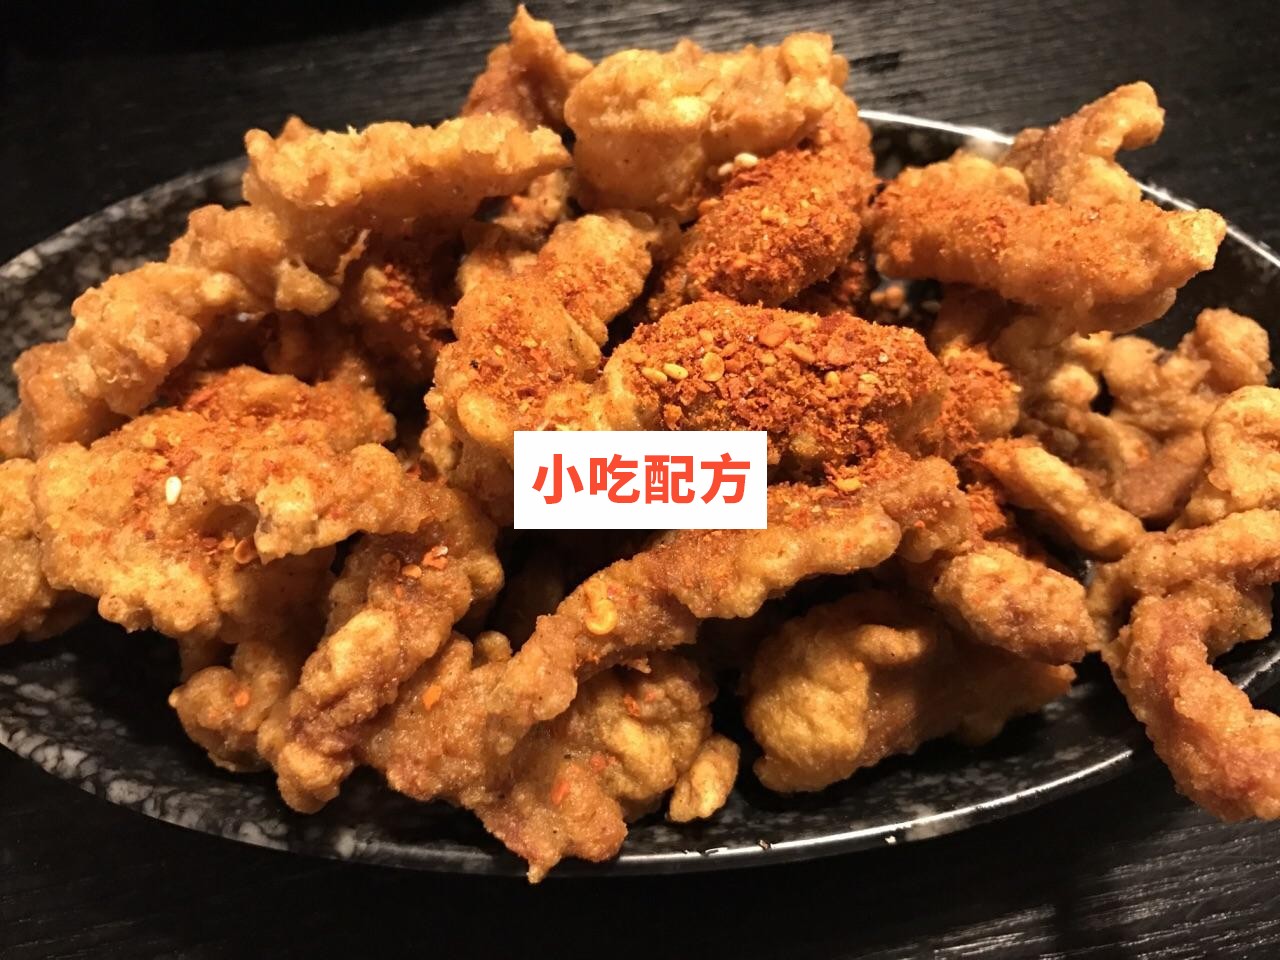 黄金炸酥肉小鱼平菇技术【视频教程】